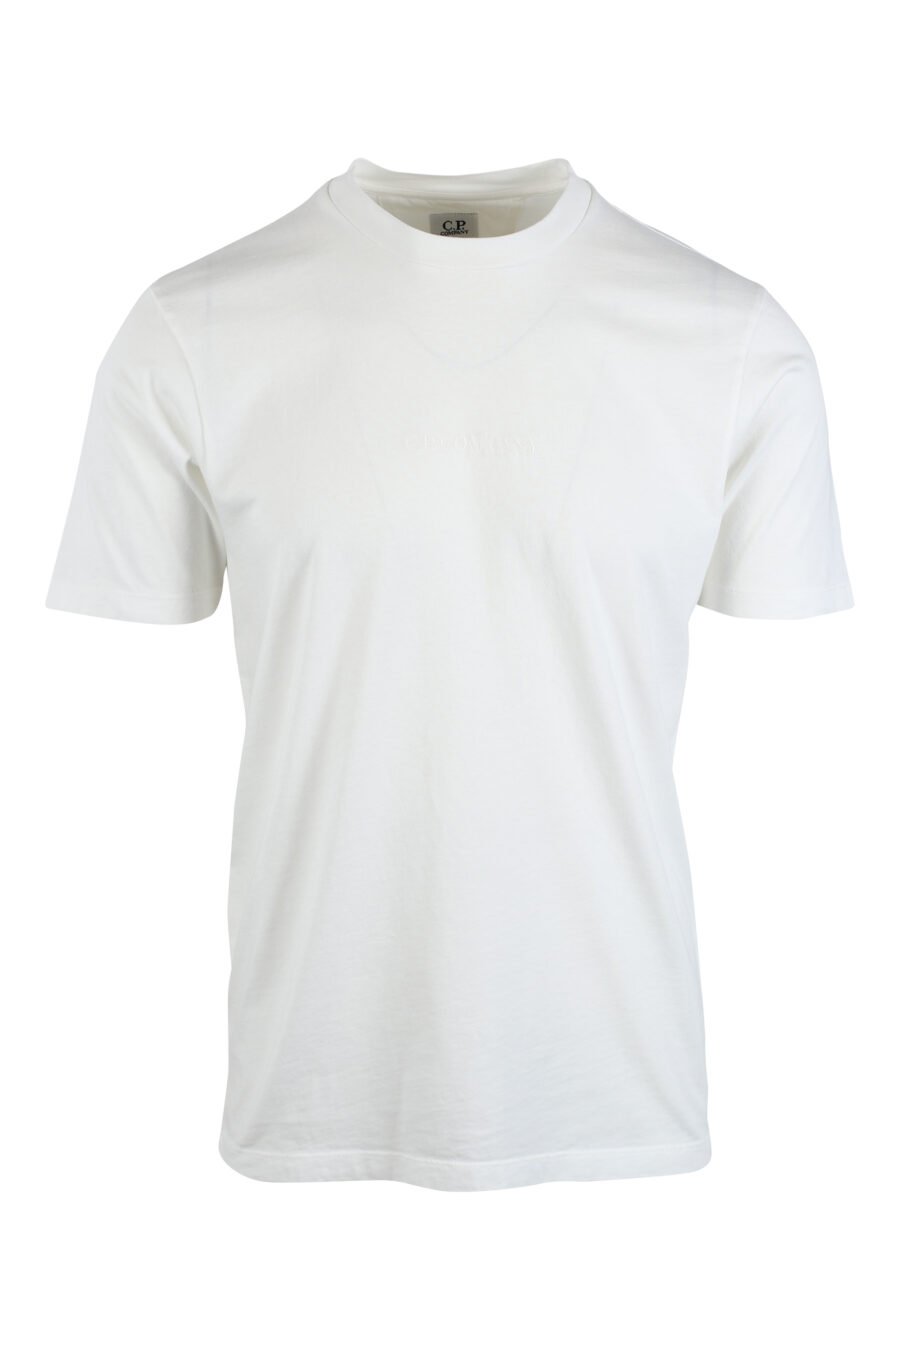 Weißes T-Shirt mit gesticktem Mini-Logo in der Mitte und Grafikdruck auf dem Rücken - IMG 2621